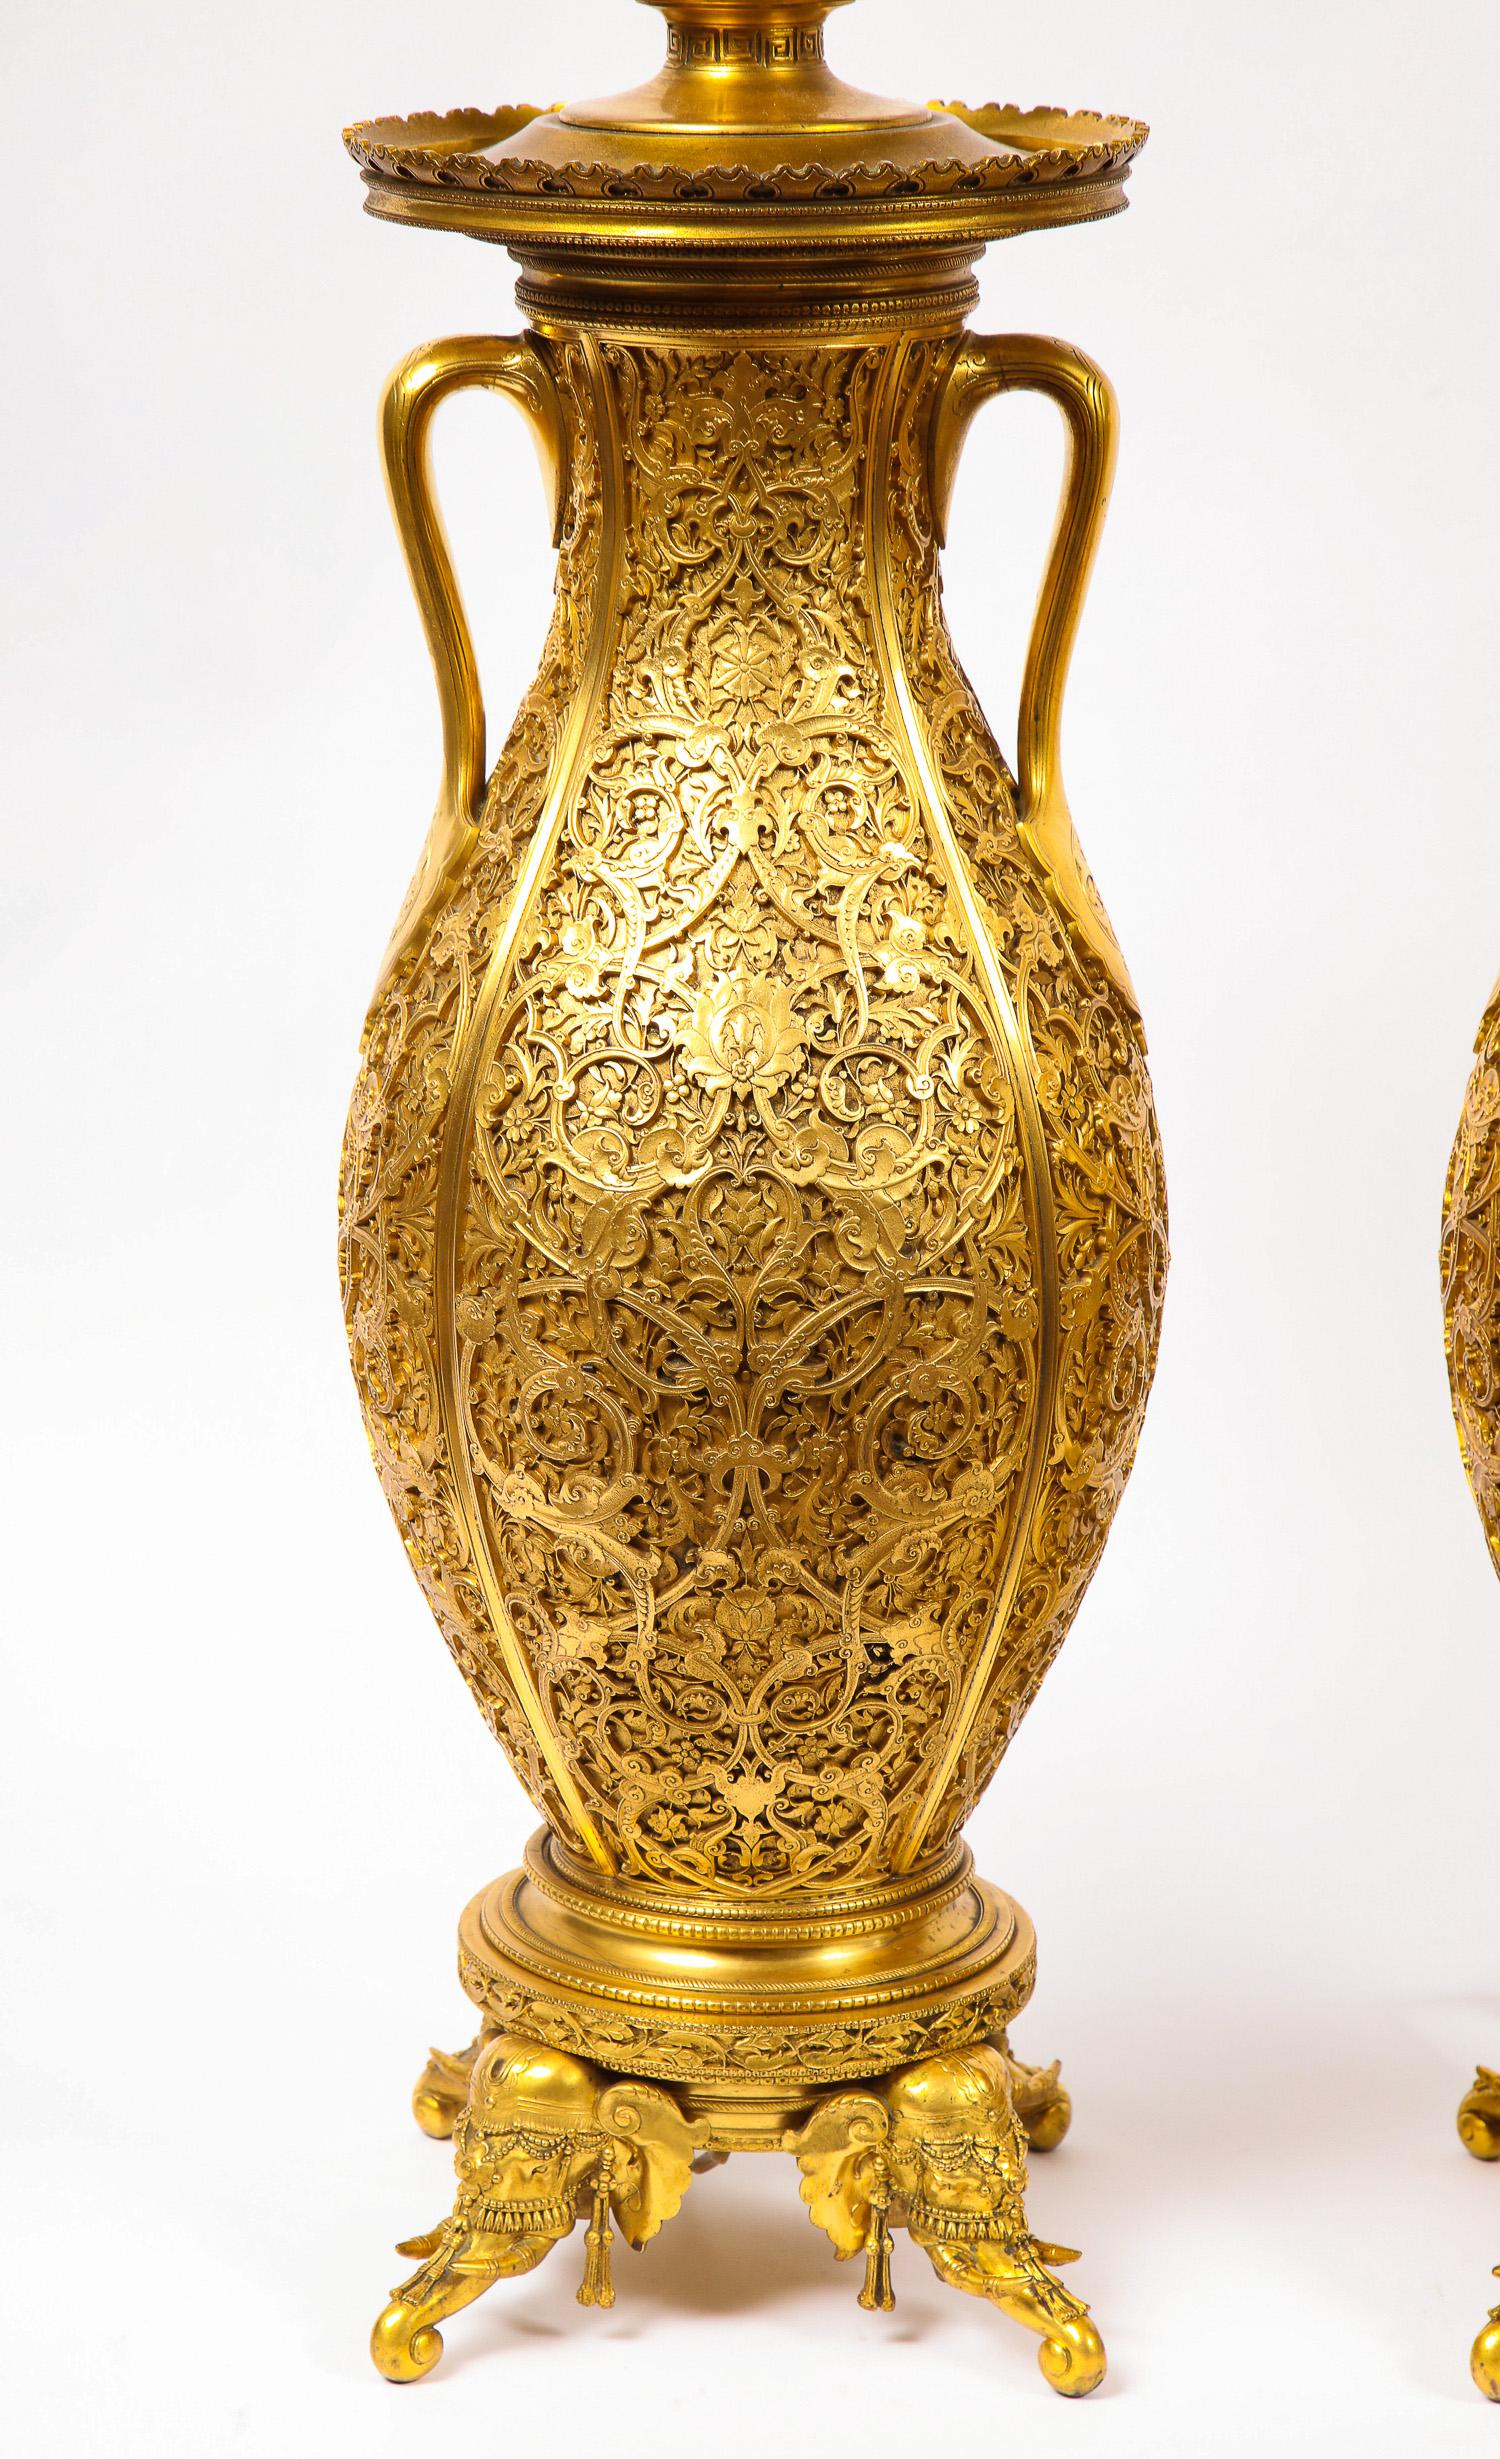 Ein wichtiges und monumentales Paar sehr schöner französischer Japonisme/Orientalismus-Vasen des 19. Jahrhunderts, entworfen von Edouard Lièvre und ausgeführt von Ferdinand Barbedienne. Jeder Körper hat eine ovale Form, fein skulptiert in einem